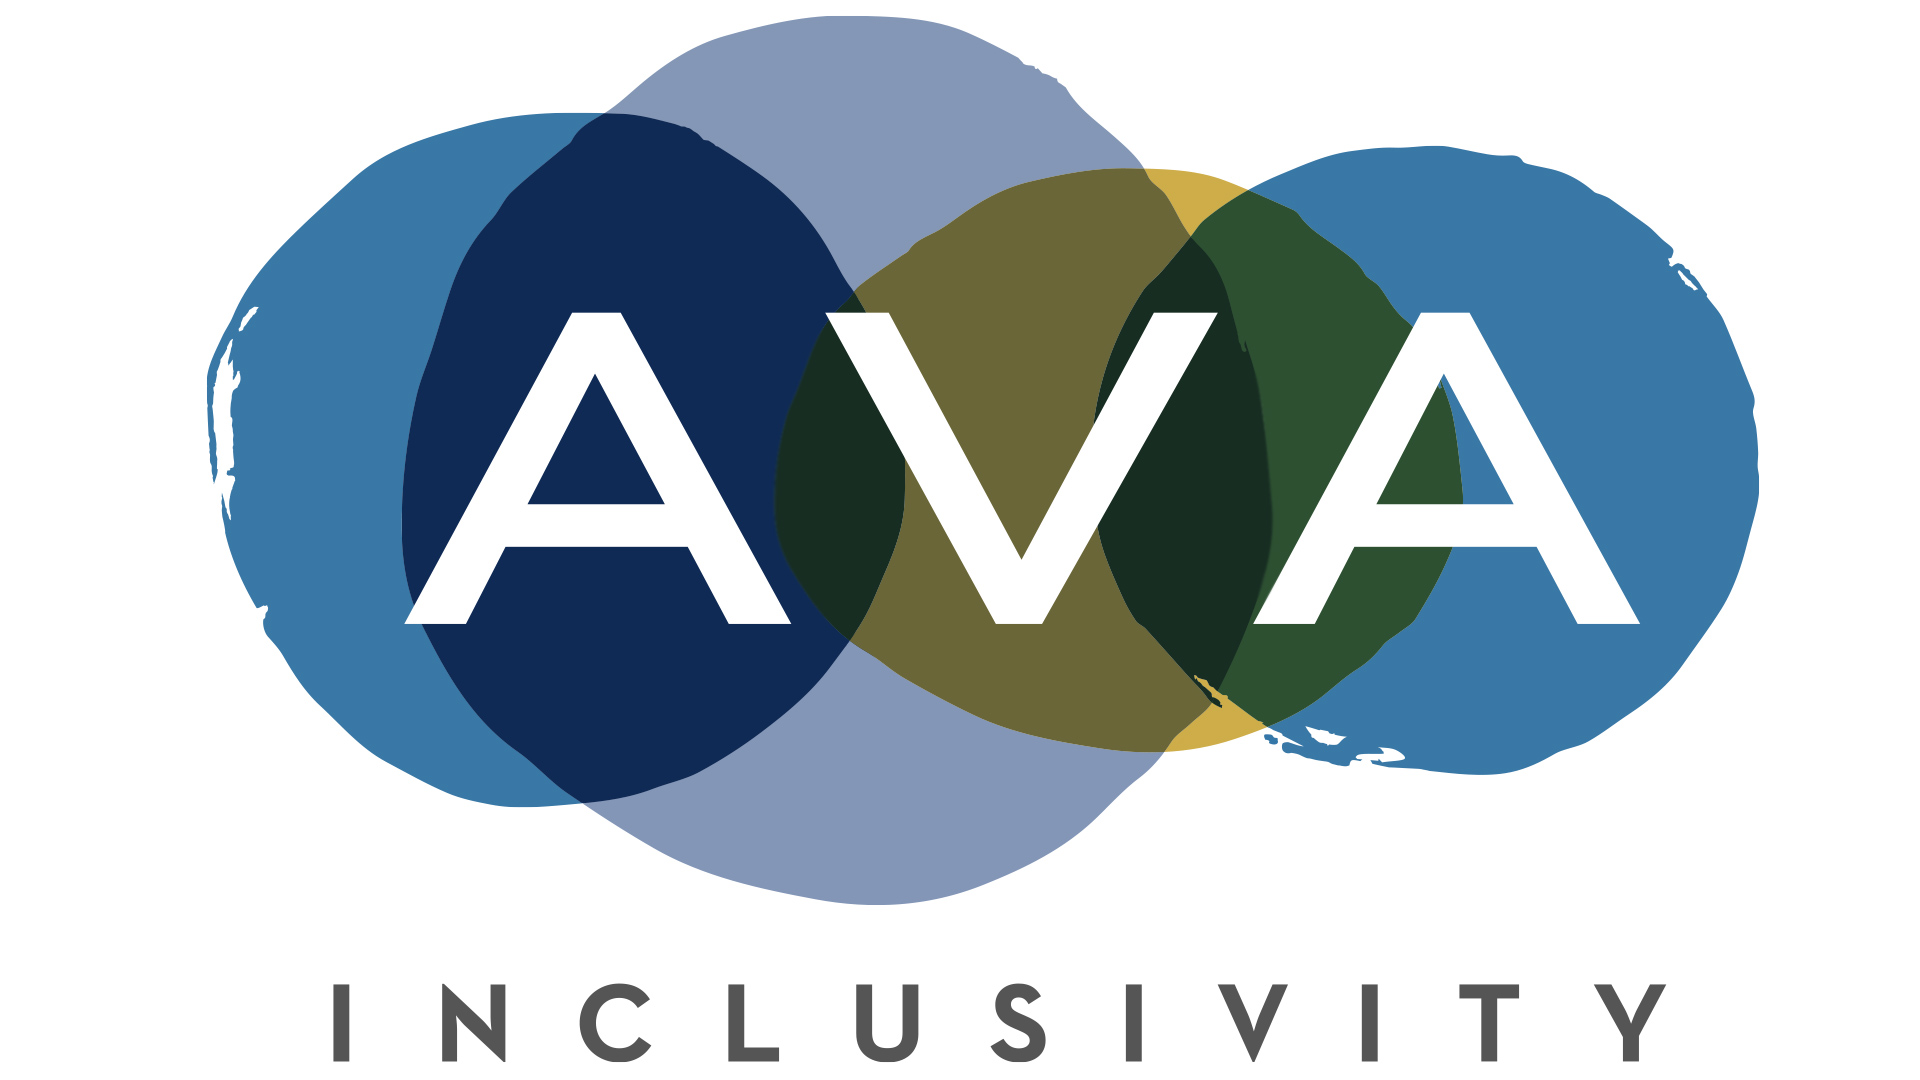 AVA Inclusivity logo by faucethead